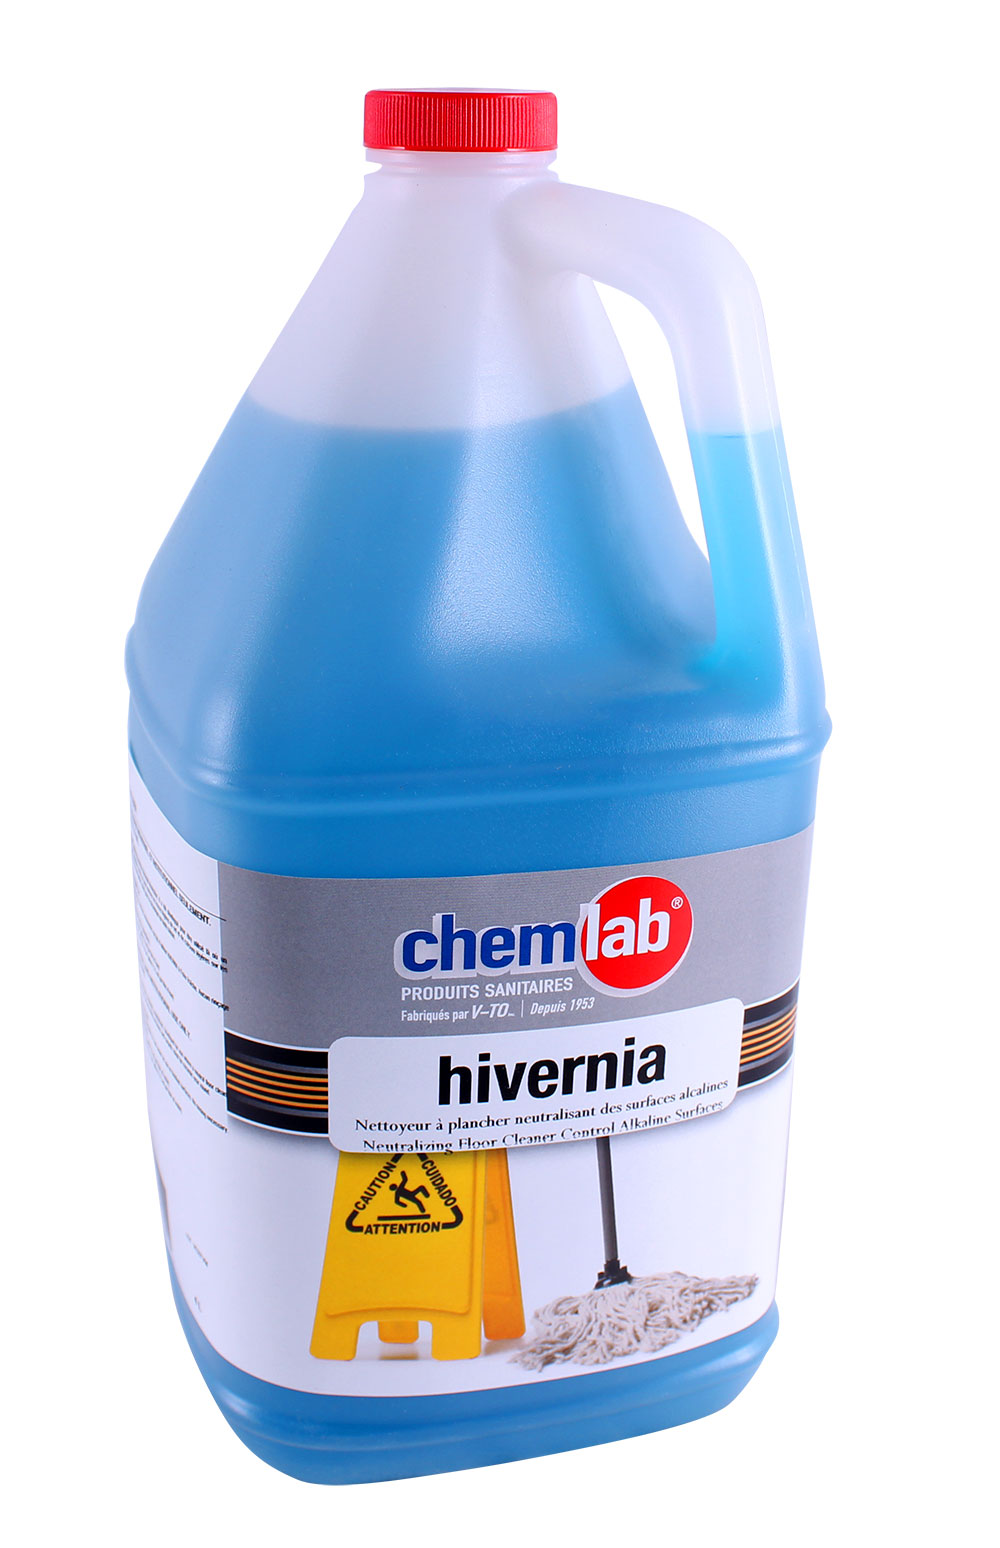 Hivernia – Nettoyant à plancher neutralisant de calcium.